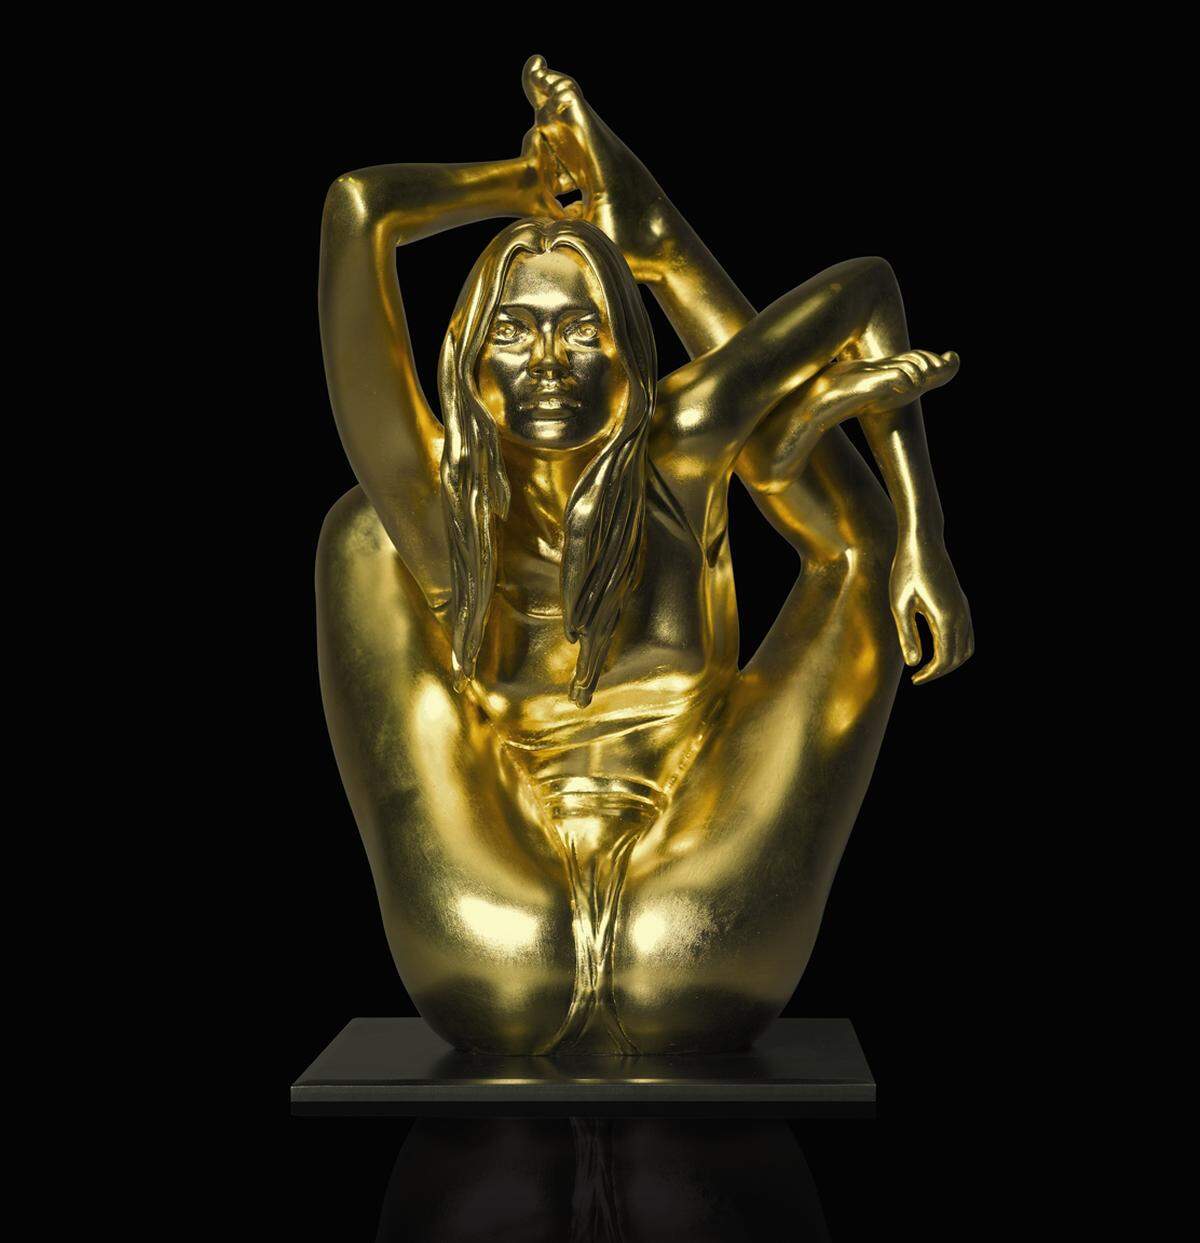 Die mit 24 Karat vergoldete Bronzestatue Maquette for Siren von Marc Quinn (2008) kam auf 87.500 Pfund.   